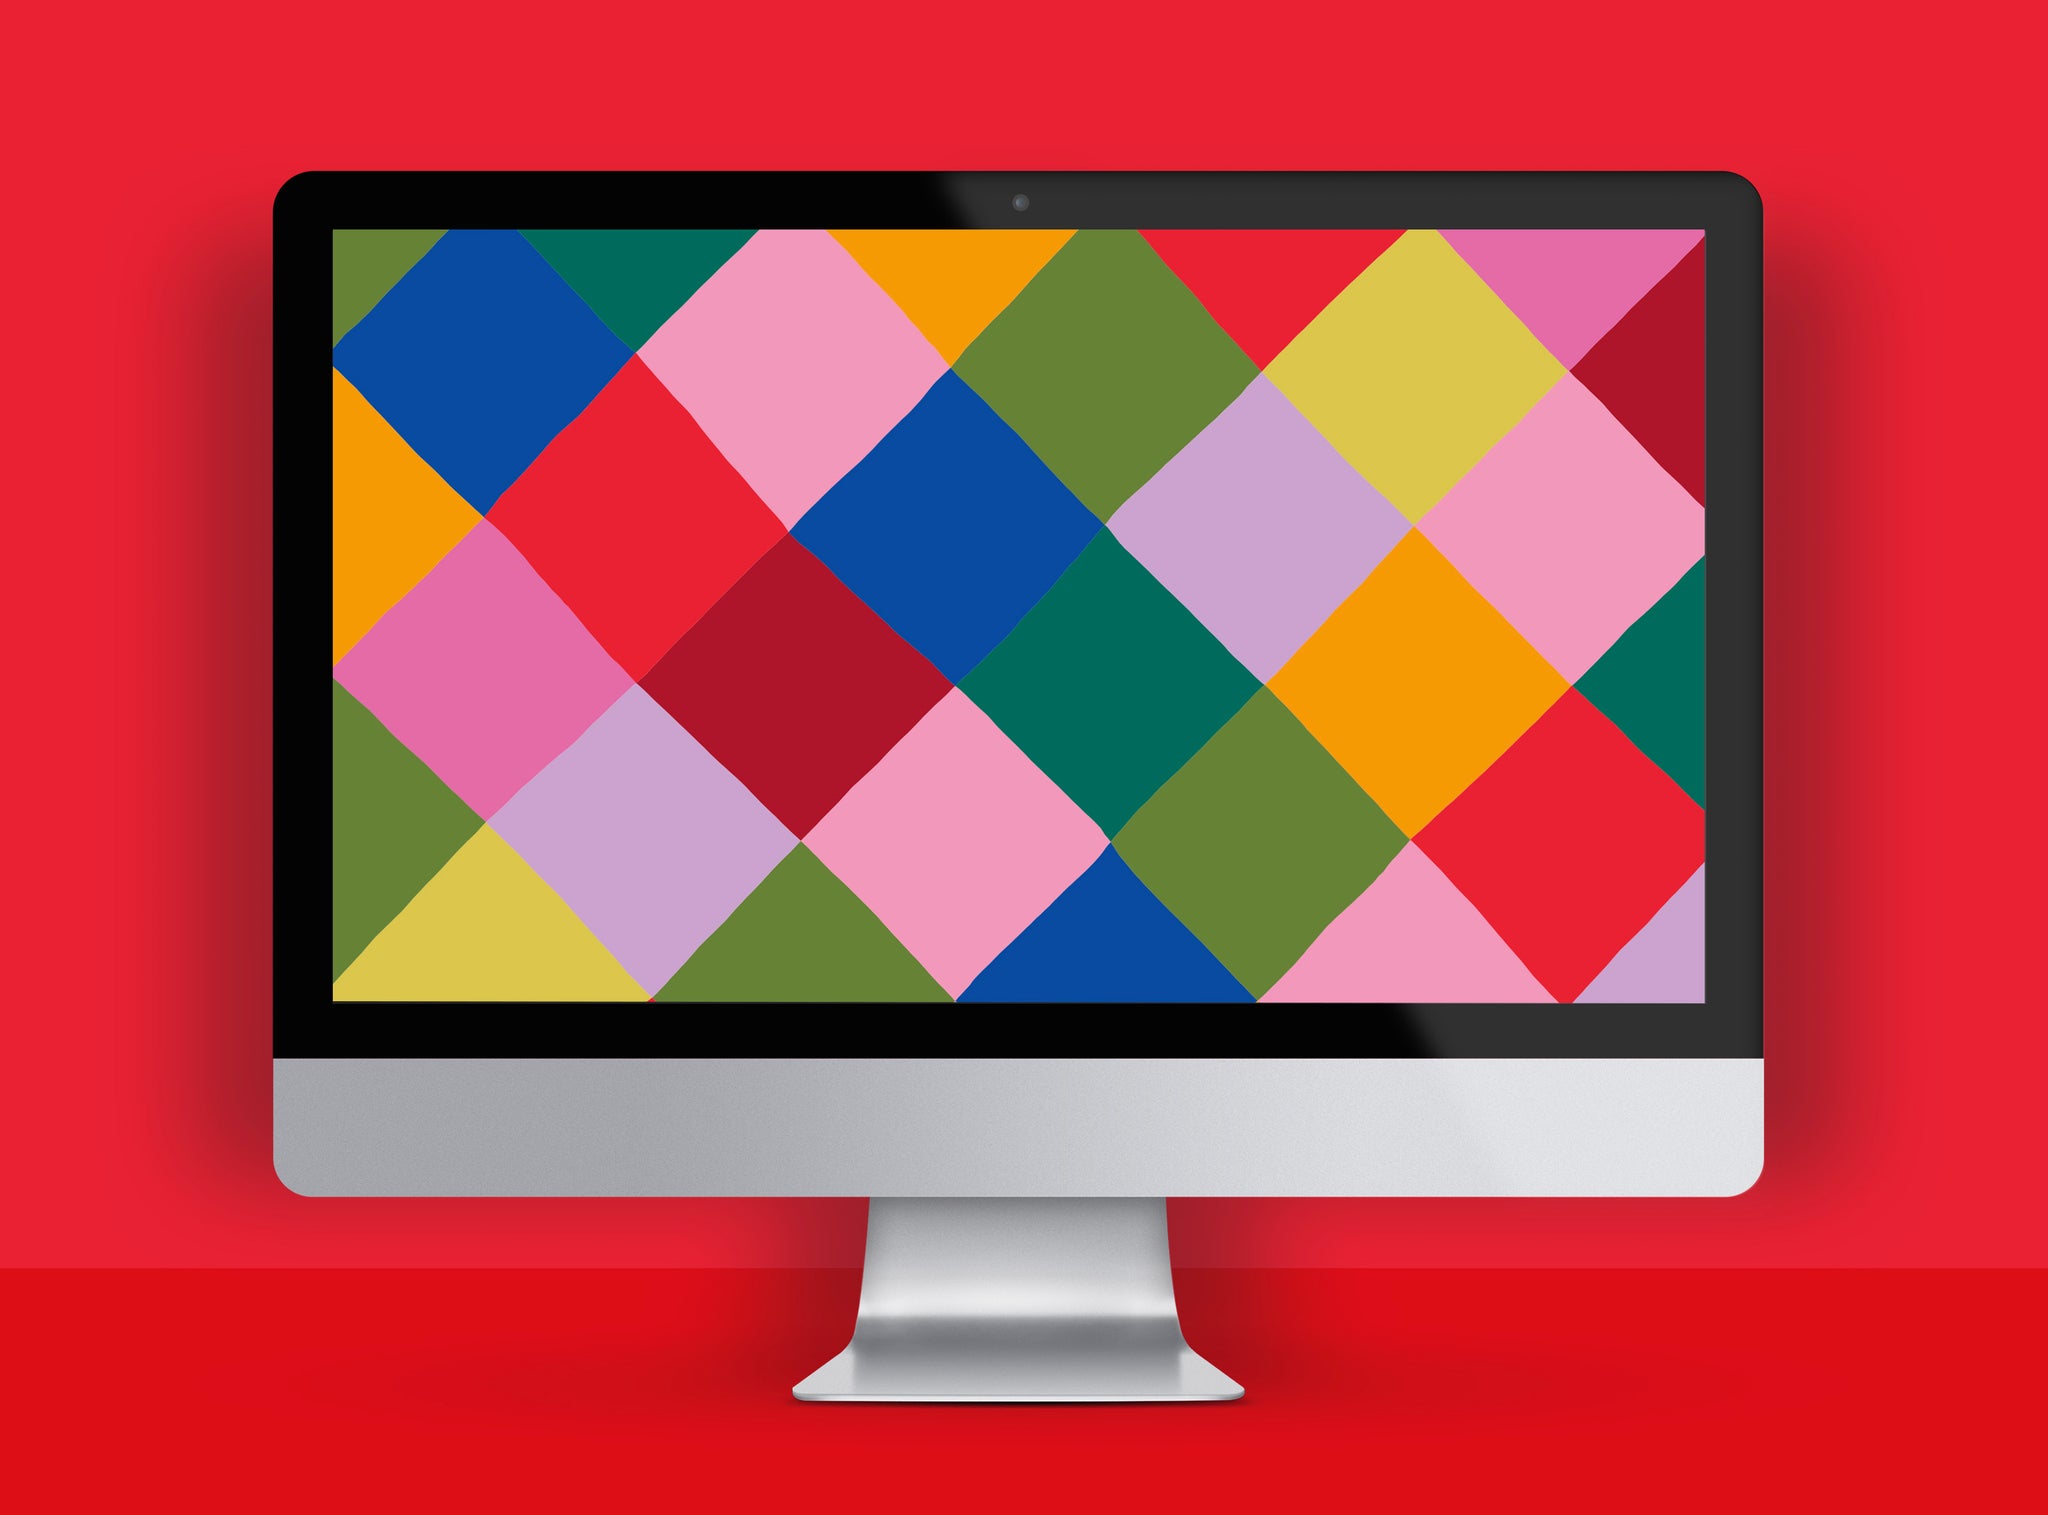 Colourful Christmas Harlequin pattern wallpaper for desktop | Raspberry Blossom